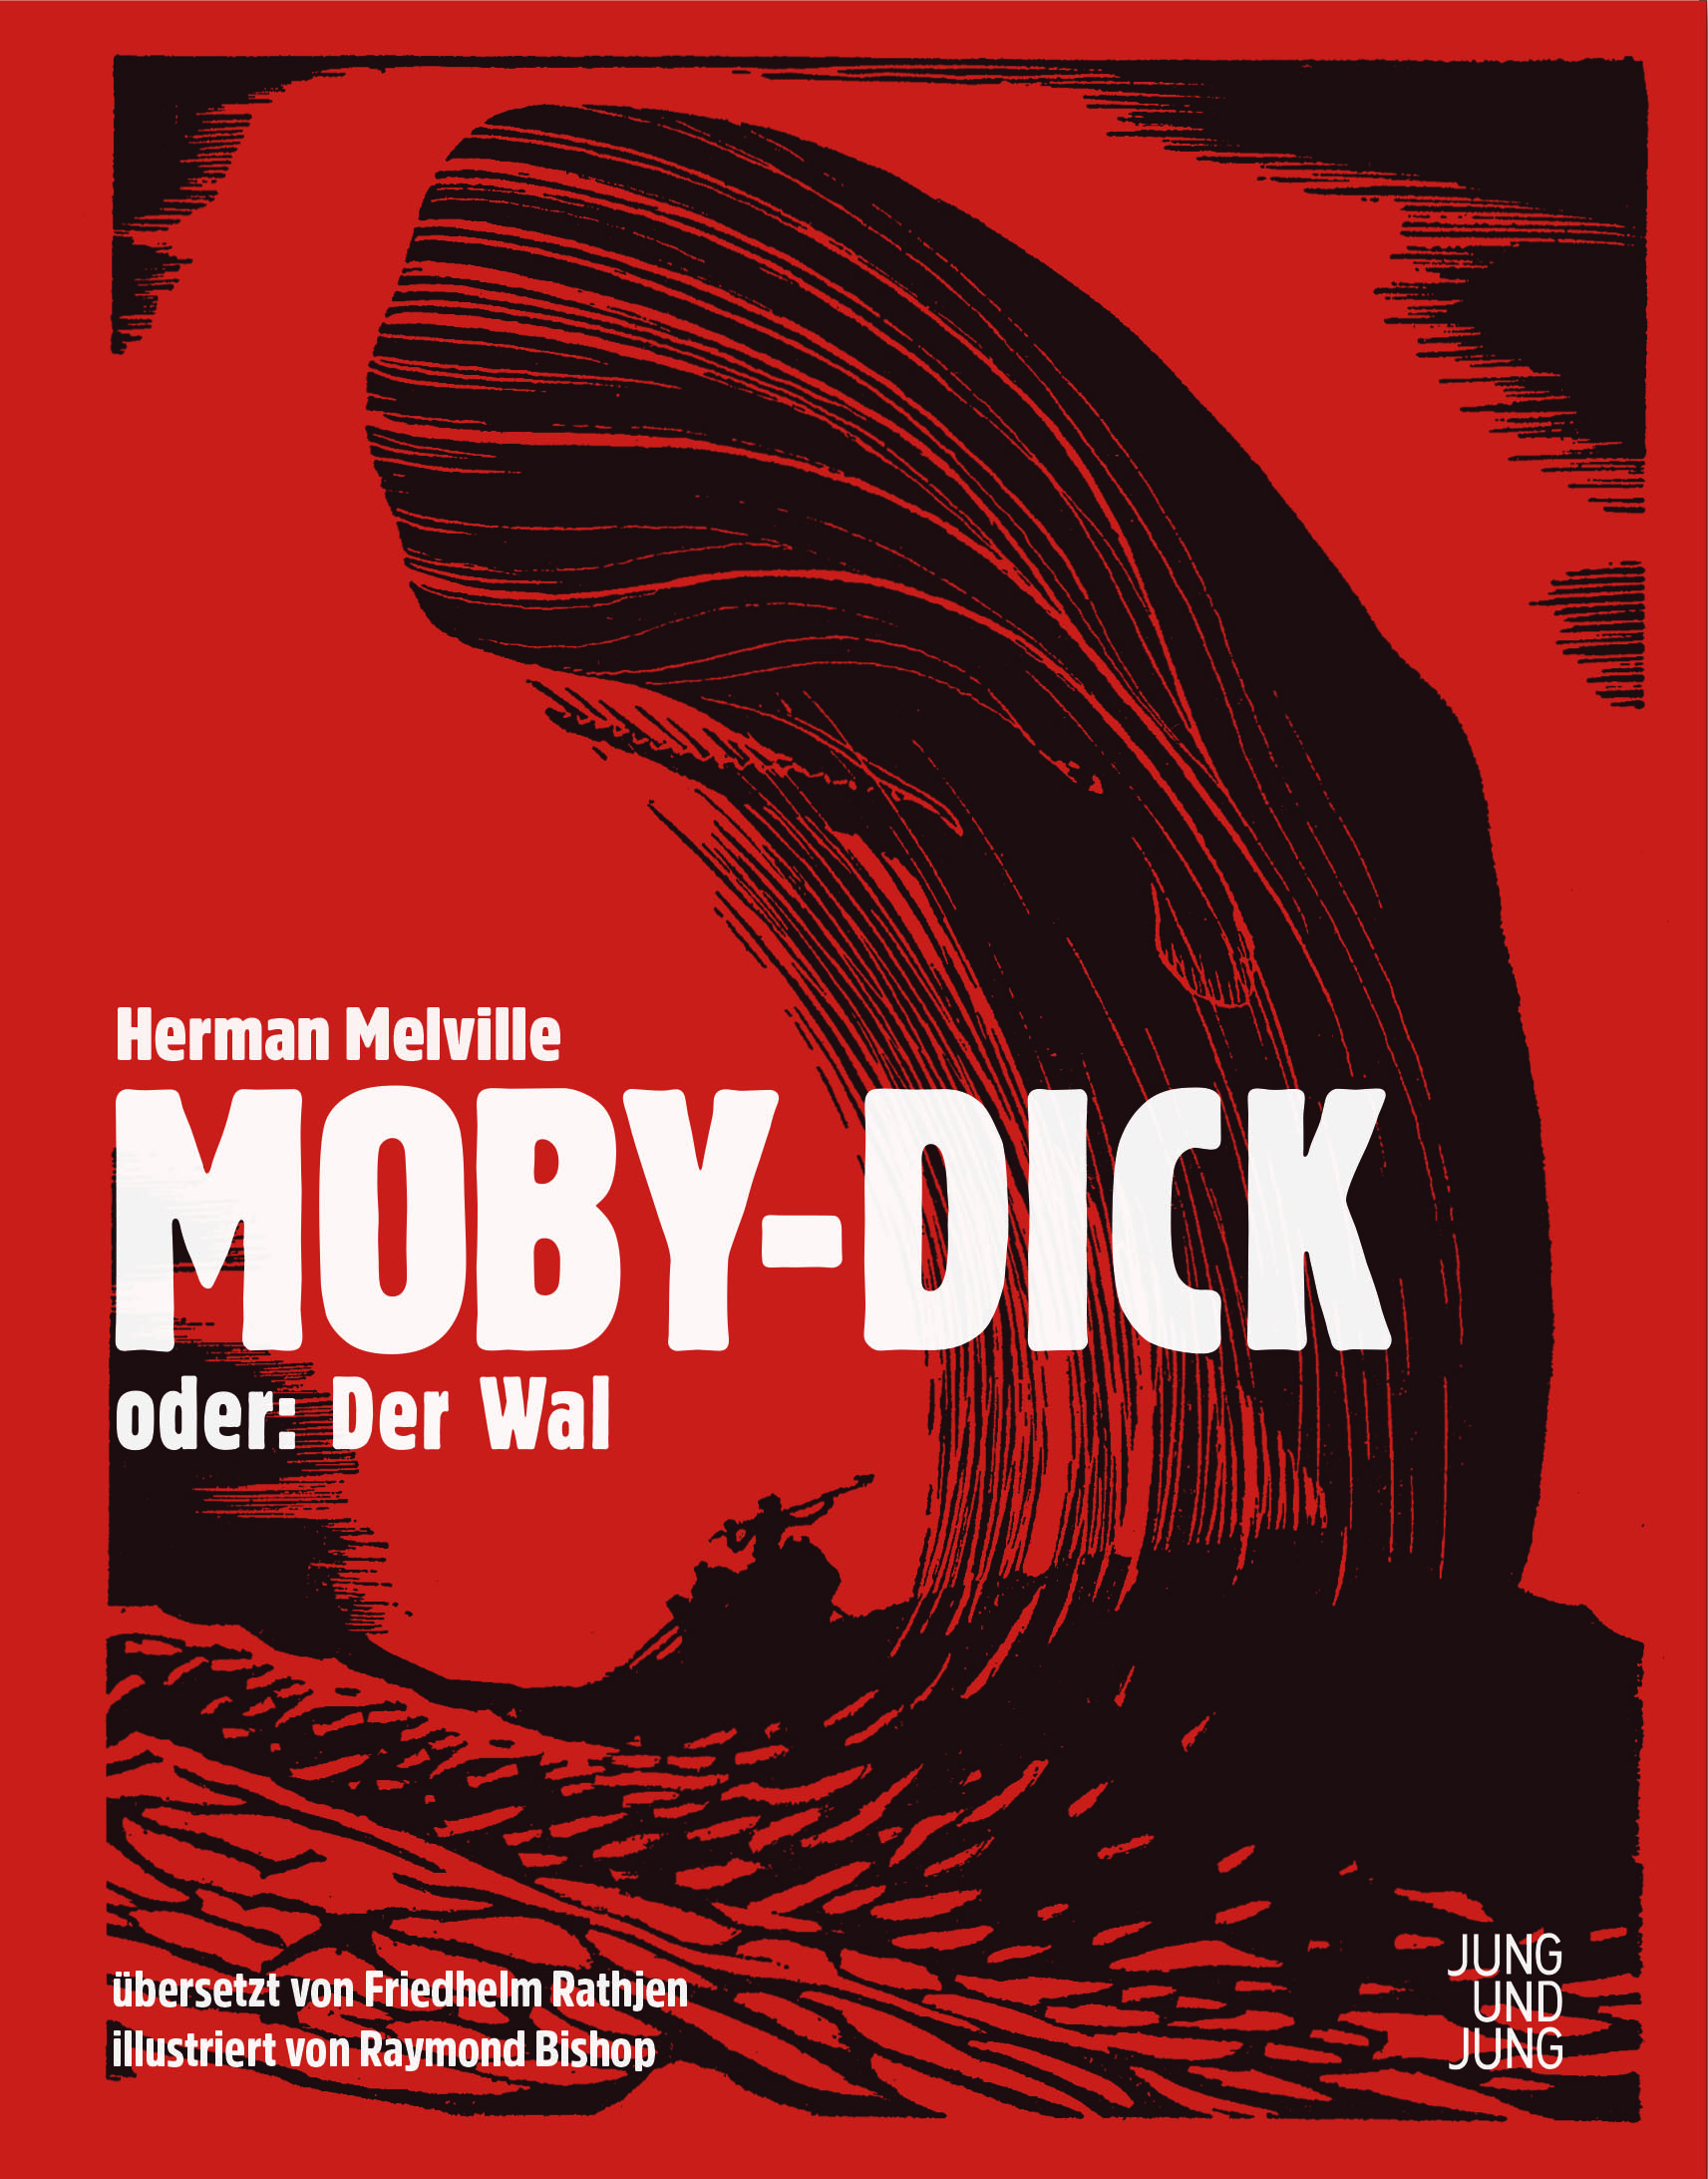 Moby dick bishop